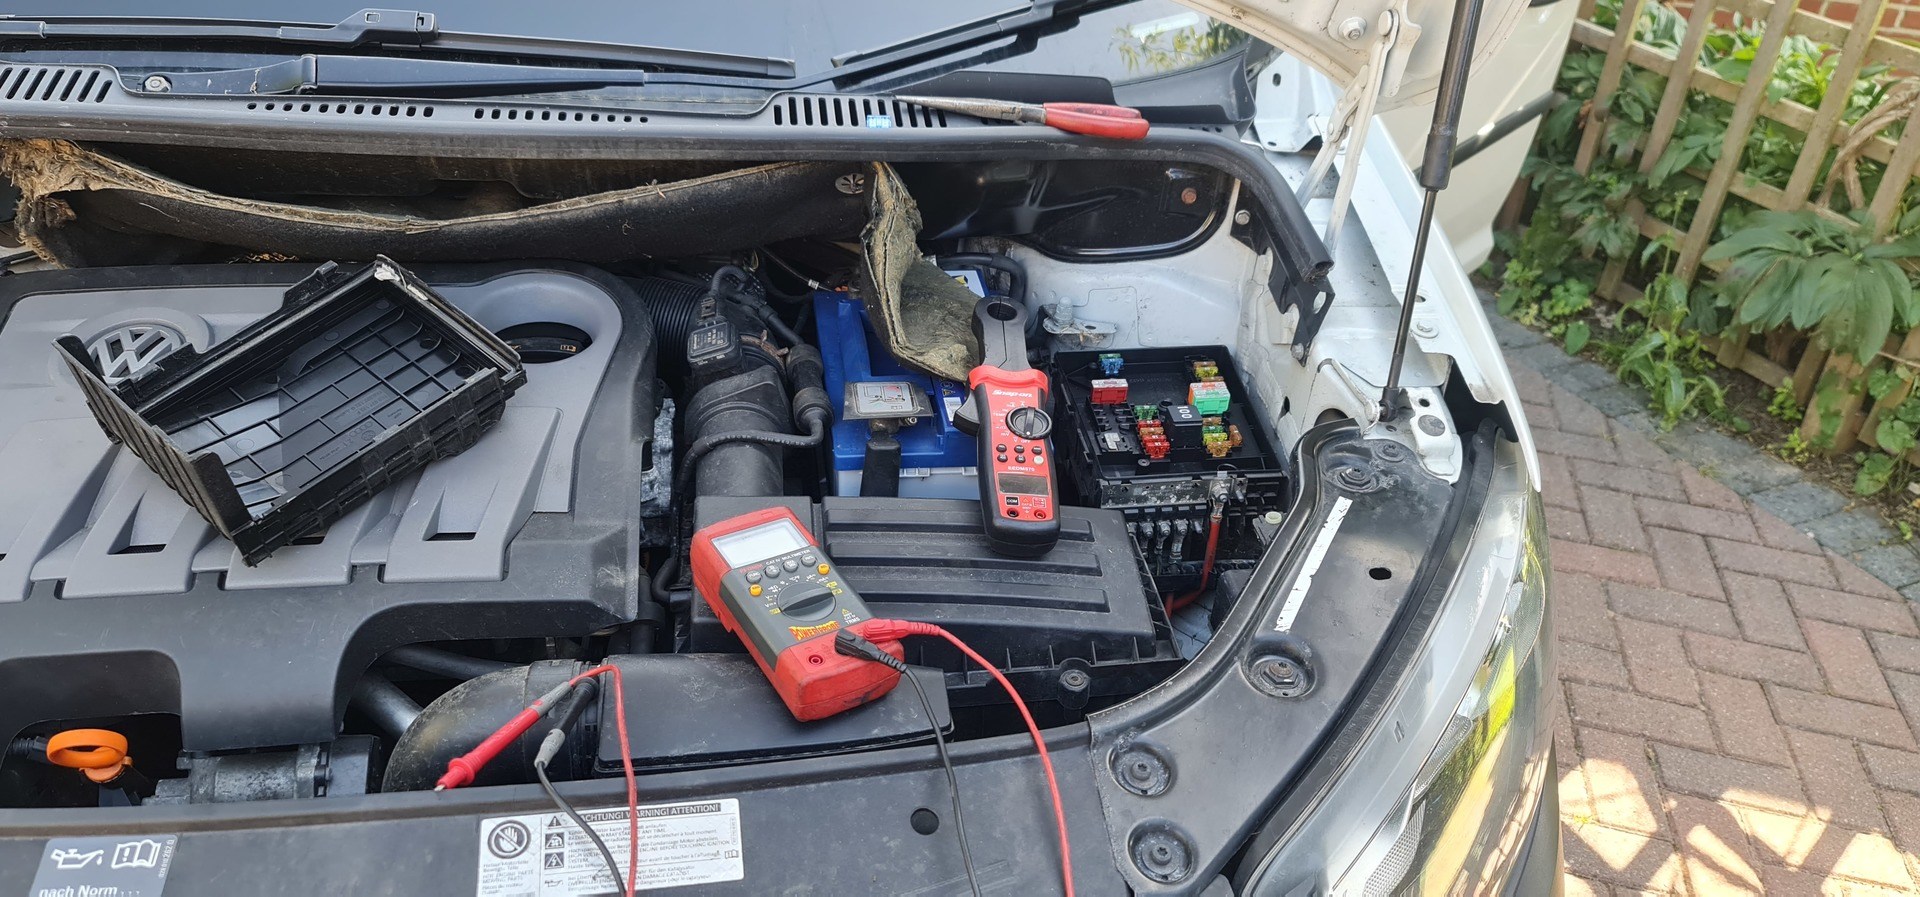 AMC Car Repairs - Weekly Roundup - Battery drains & more 